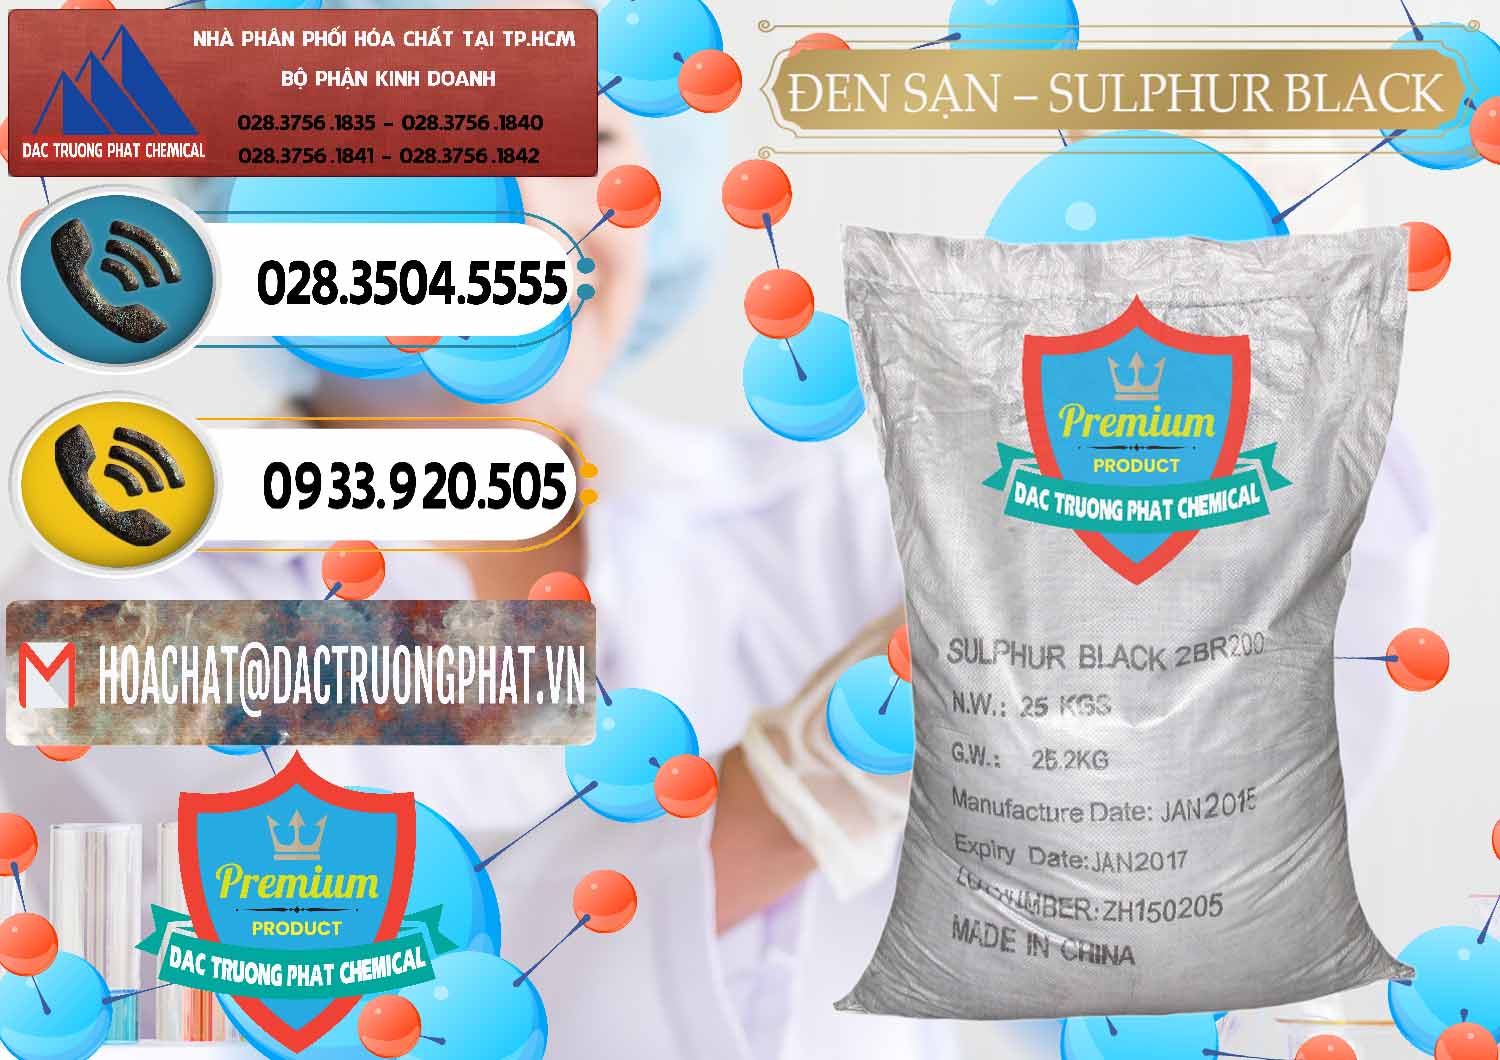 Nơi nhập khẩu ( bán ) Đen Sạn – Sulphur Black Trung Quốc China - 0062 - Đơn vị chuyên kinh doanh ( phân phối ) hóa chất tại TP.HCM - hoachatdetnhuom.vn